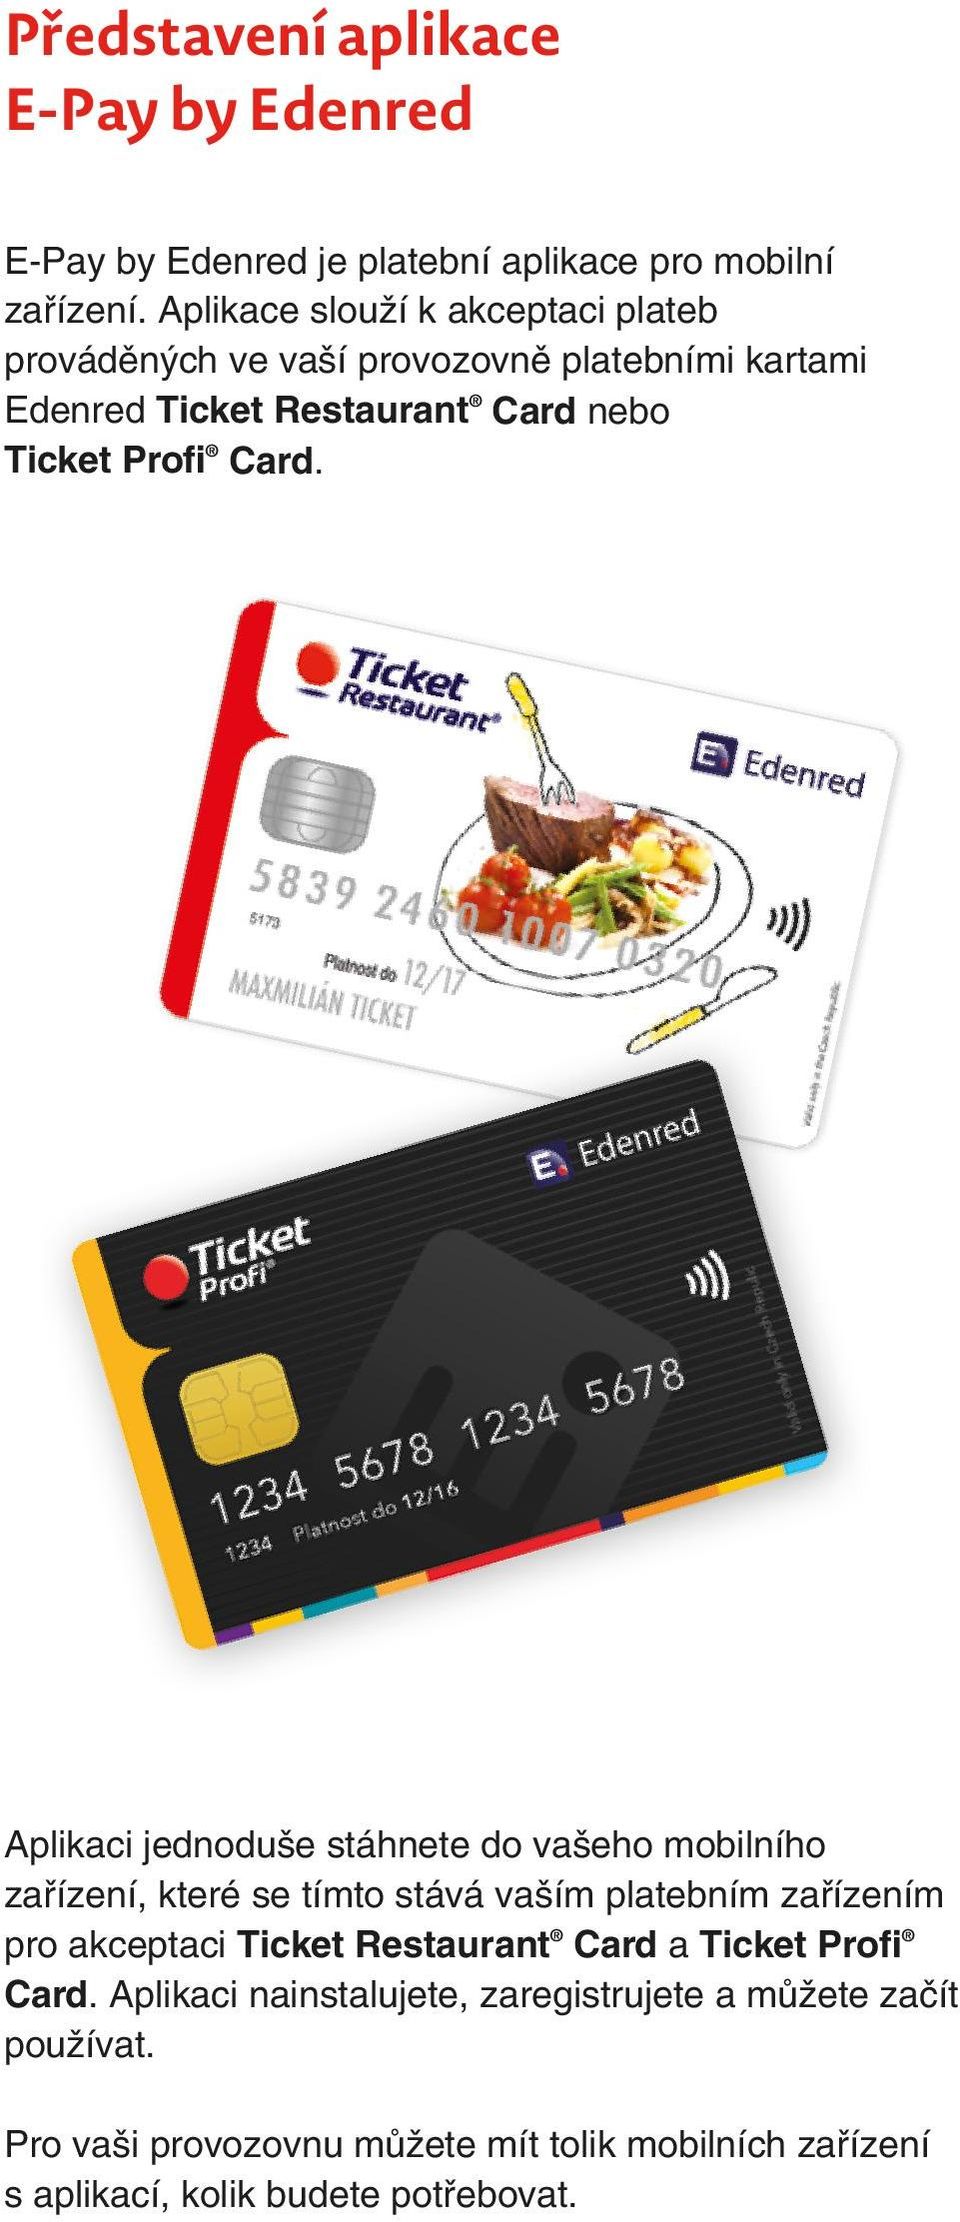 Aplikaci jednoduše stáhnete do vašeho mobilního zařízení, které se tímto stává vaším platebním zařízením pro akceptaci Ticket Restaurant